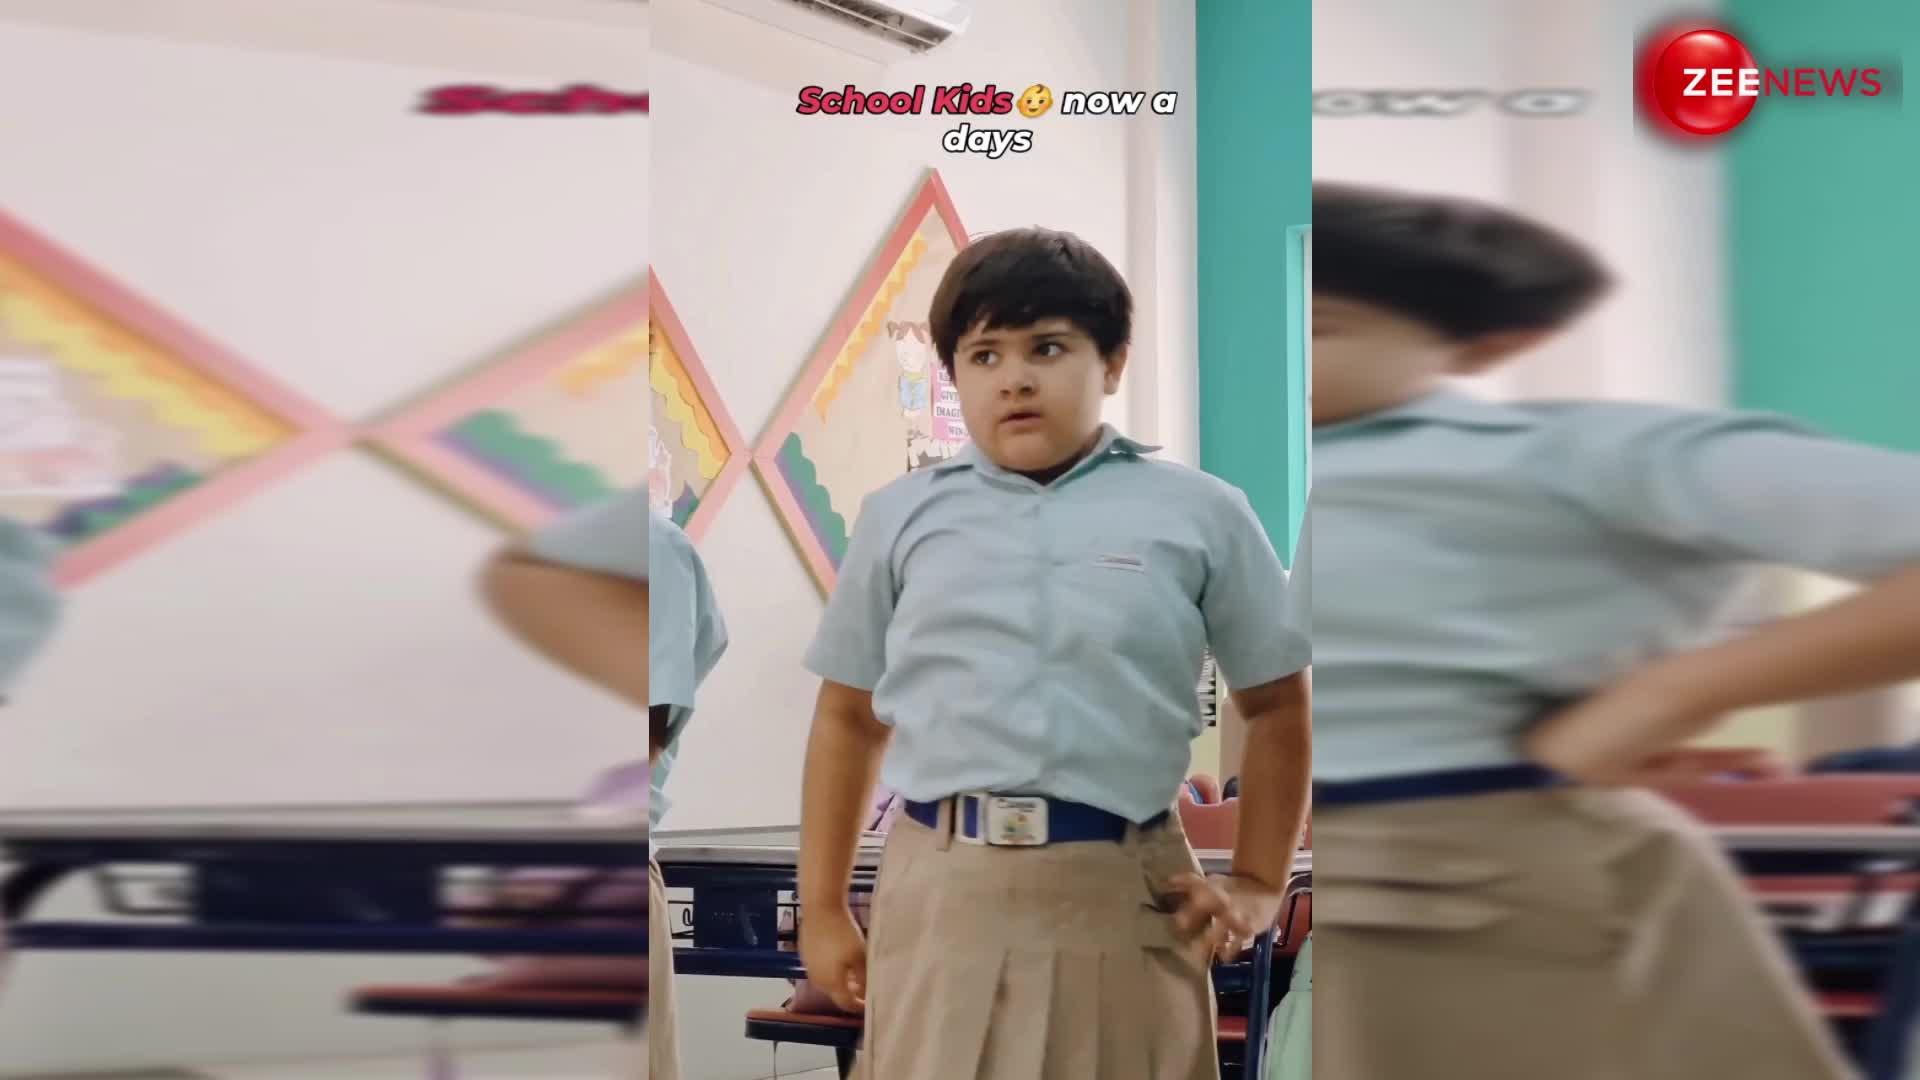 बापू सेहत के लिए, तू तो हानिकारक है... स्कूल की बच्ची ने आमिर खान के गाने पर डांस कर दिखाए तगड़े एक्सप्रेशन, वायरल हुआ वीडियो